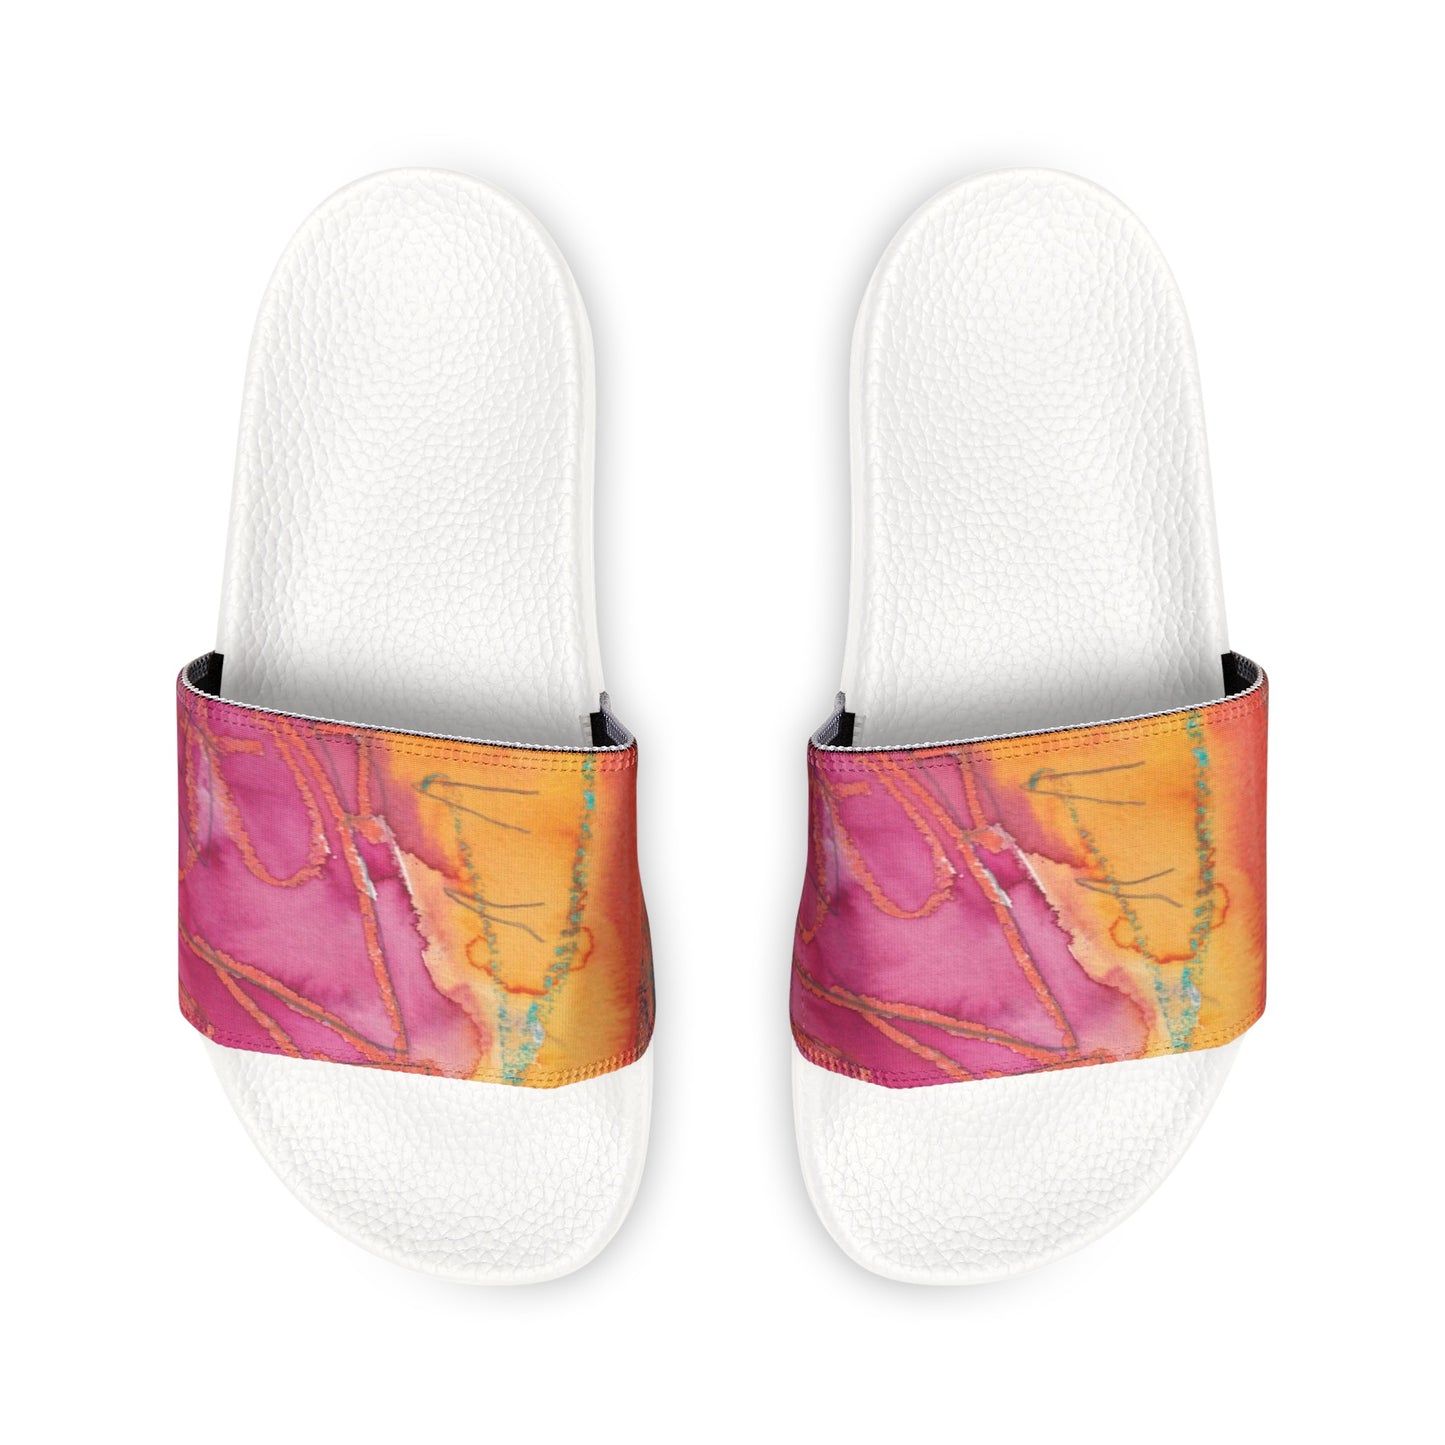 Women's PU Slide Sandals